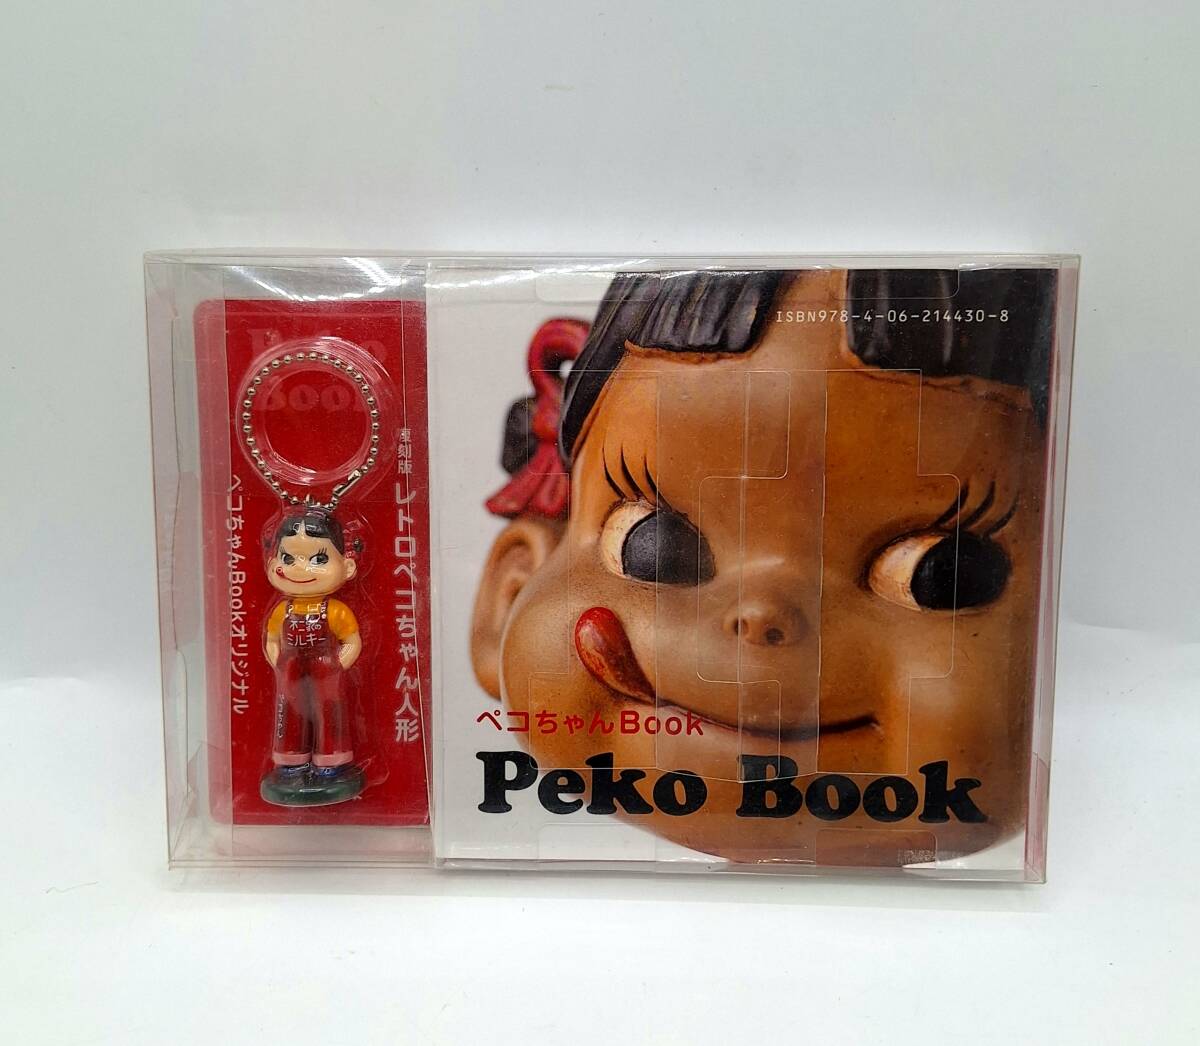 ペコちゃん Book 不二家 FUJIYA Peko Book 復刻版 レトロペコちゃん人形 本 美品 【4840-2】_画像1